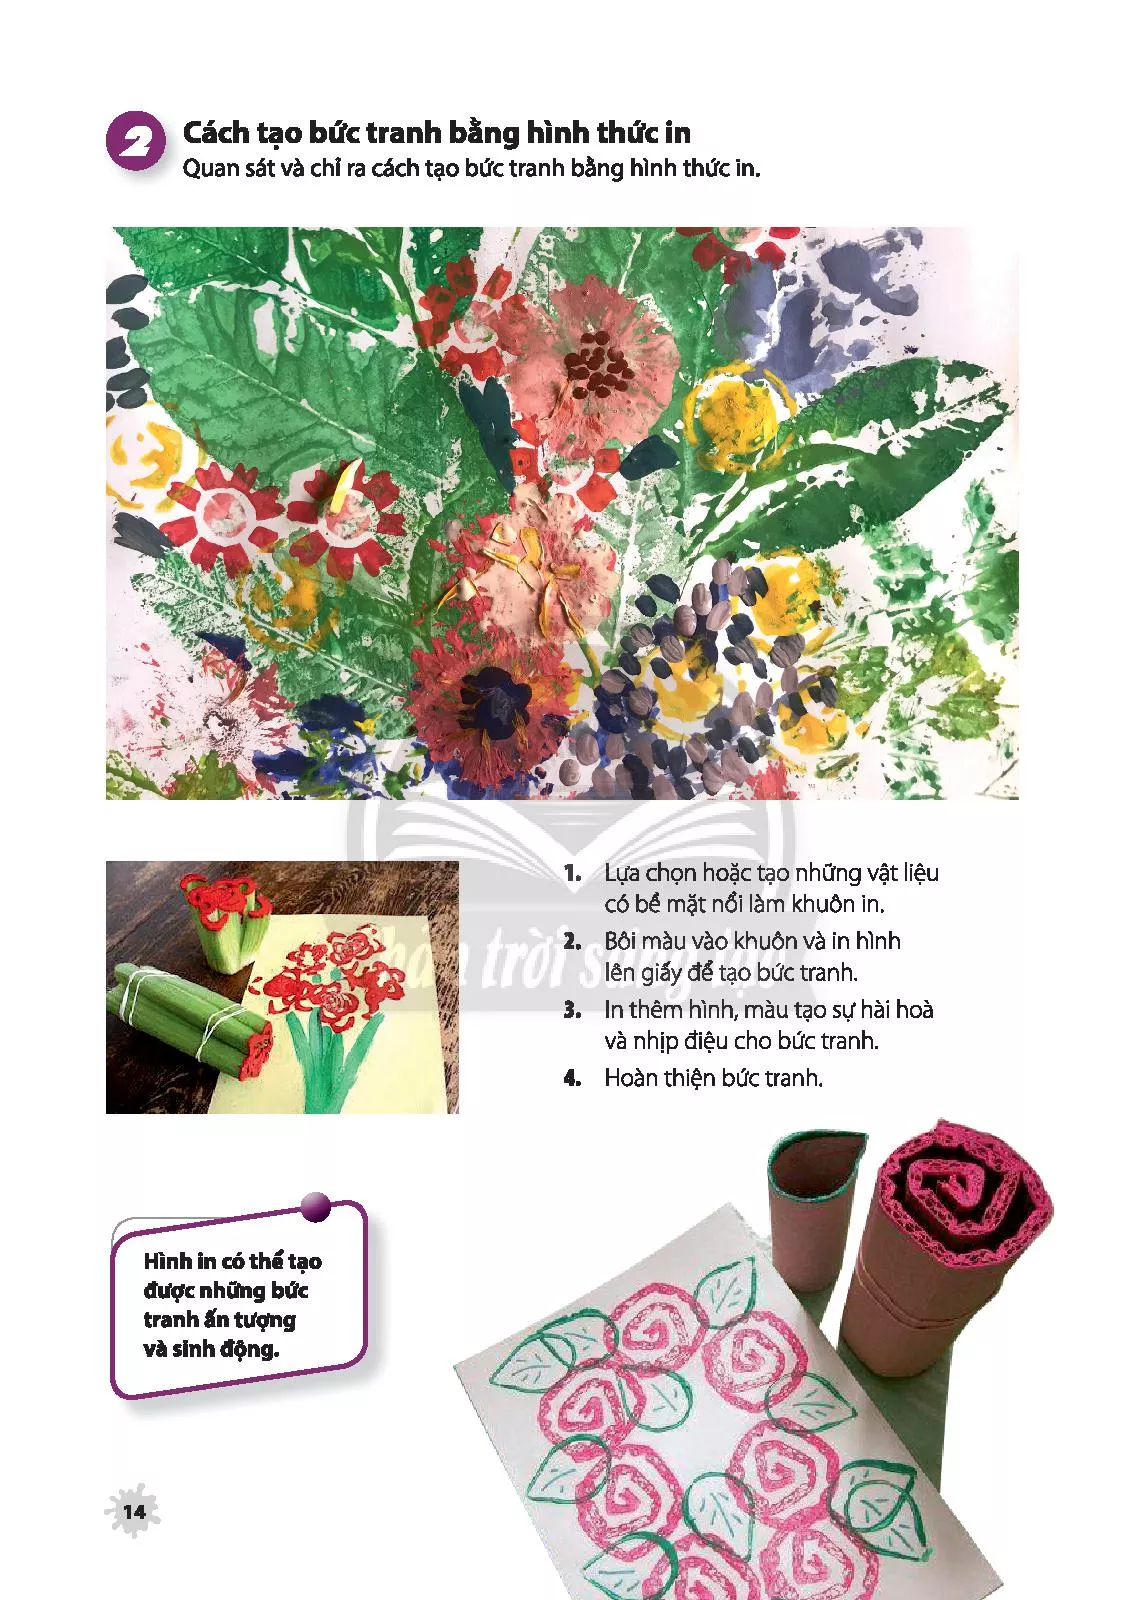 Hãy cùng ngưỡng mộ tài năng vẽ tranh của các học sinh lớp 6 đầy triển vọng khi họ vẽ những bức tranh in hoa lá tuyệt đẹp. Họ đã tạo ra những tác phẩm nghệ thuật độc đáo chỉ bằng những nét vẽ và sắc màu tuyệt vời.